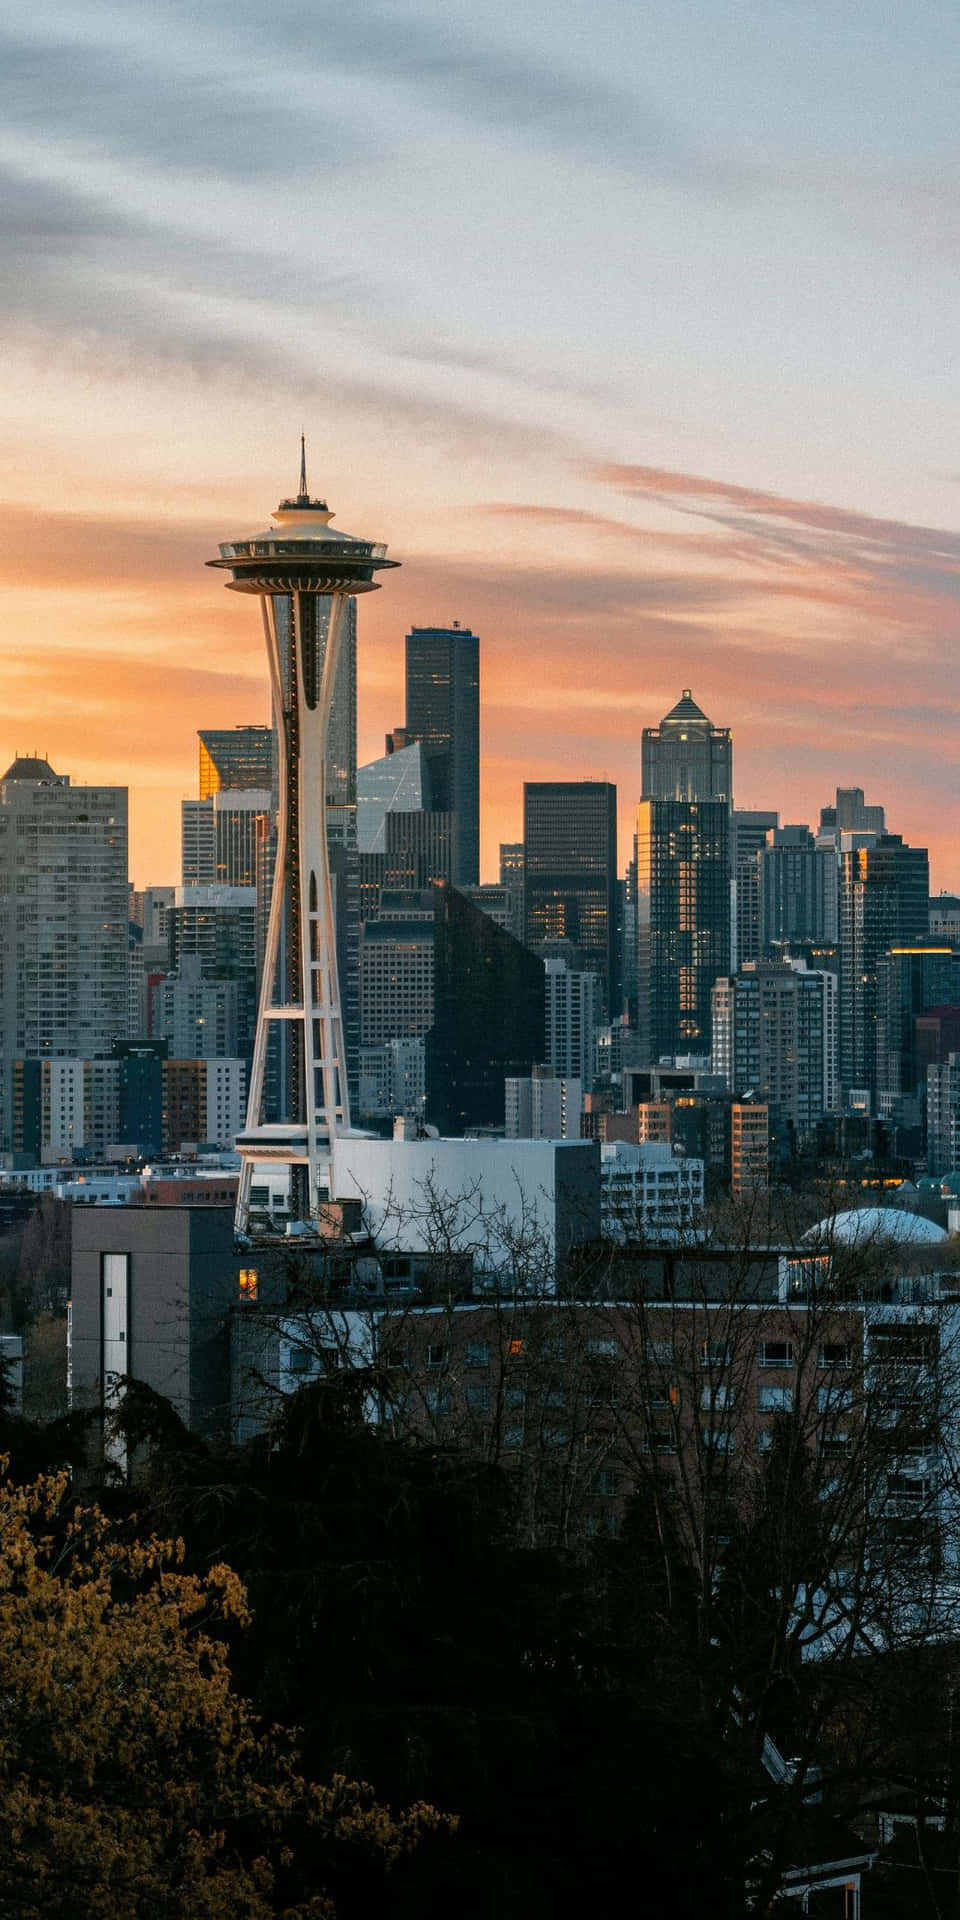 Nighttime Skyline of Seattle as Seen From Pixel 3